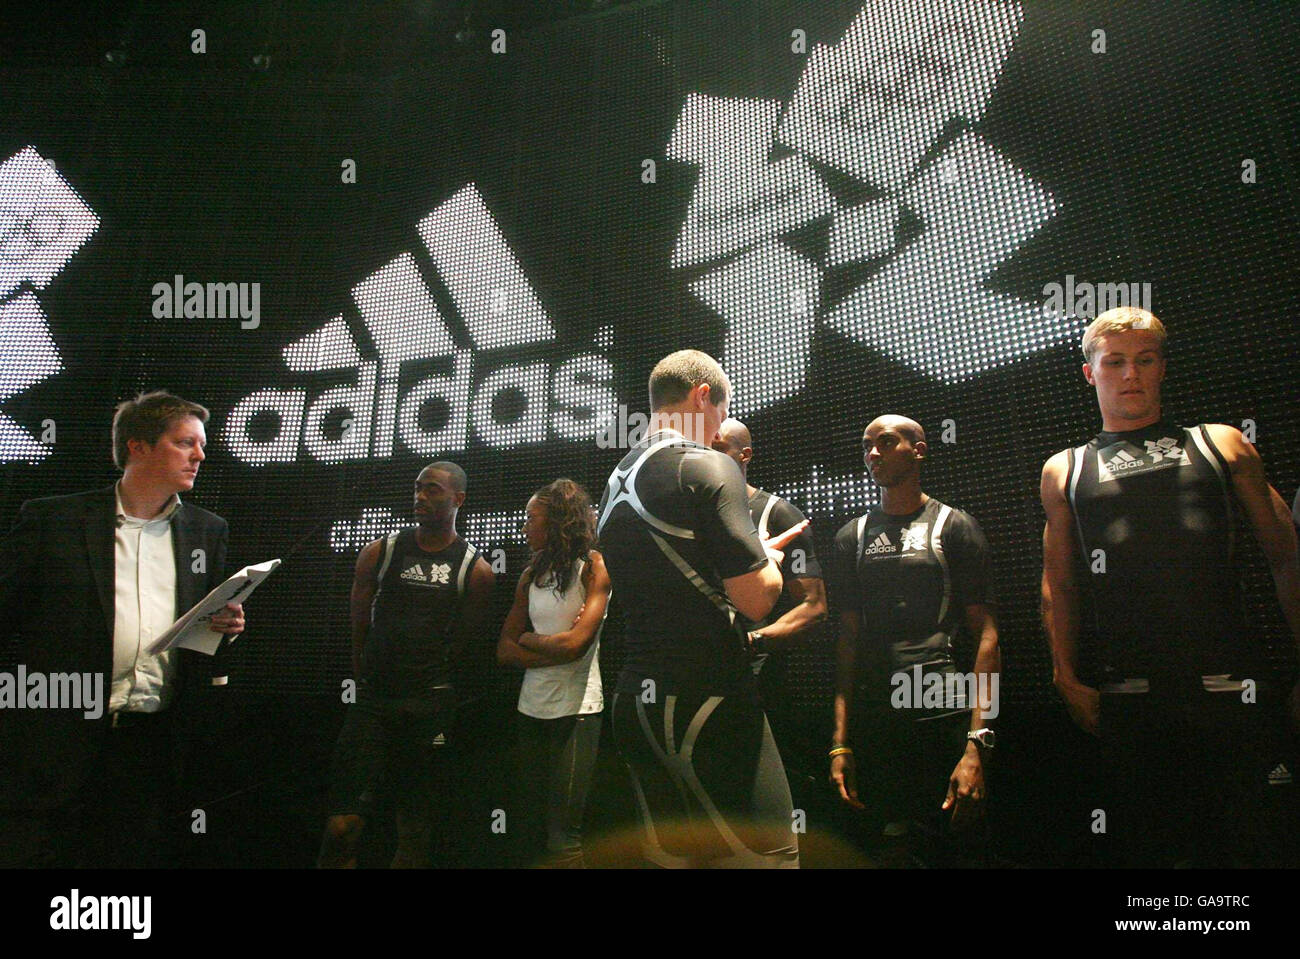 Des athlètes britanniques, dont le champion du monde de 100m Tyson gay (2e à gauche), le champion du monde de 200m Allyson Felix (3e à gauche) et le champion de pole Vaulter Joe IVE (à droite), assistent au dévoilement d'Adidas en tant que sponsor de l'équipe GB des Jeux Olympiques de Londres 2012. Banque D'Images